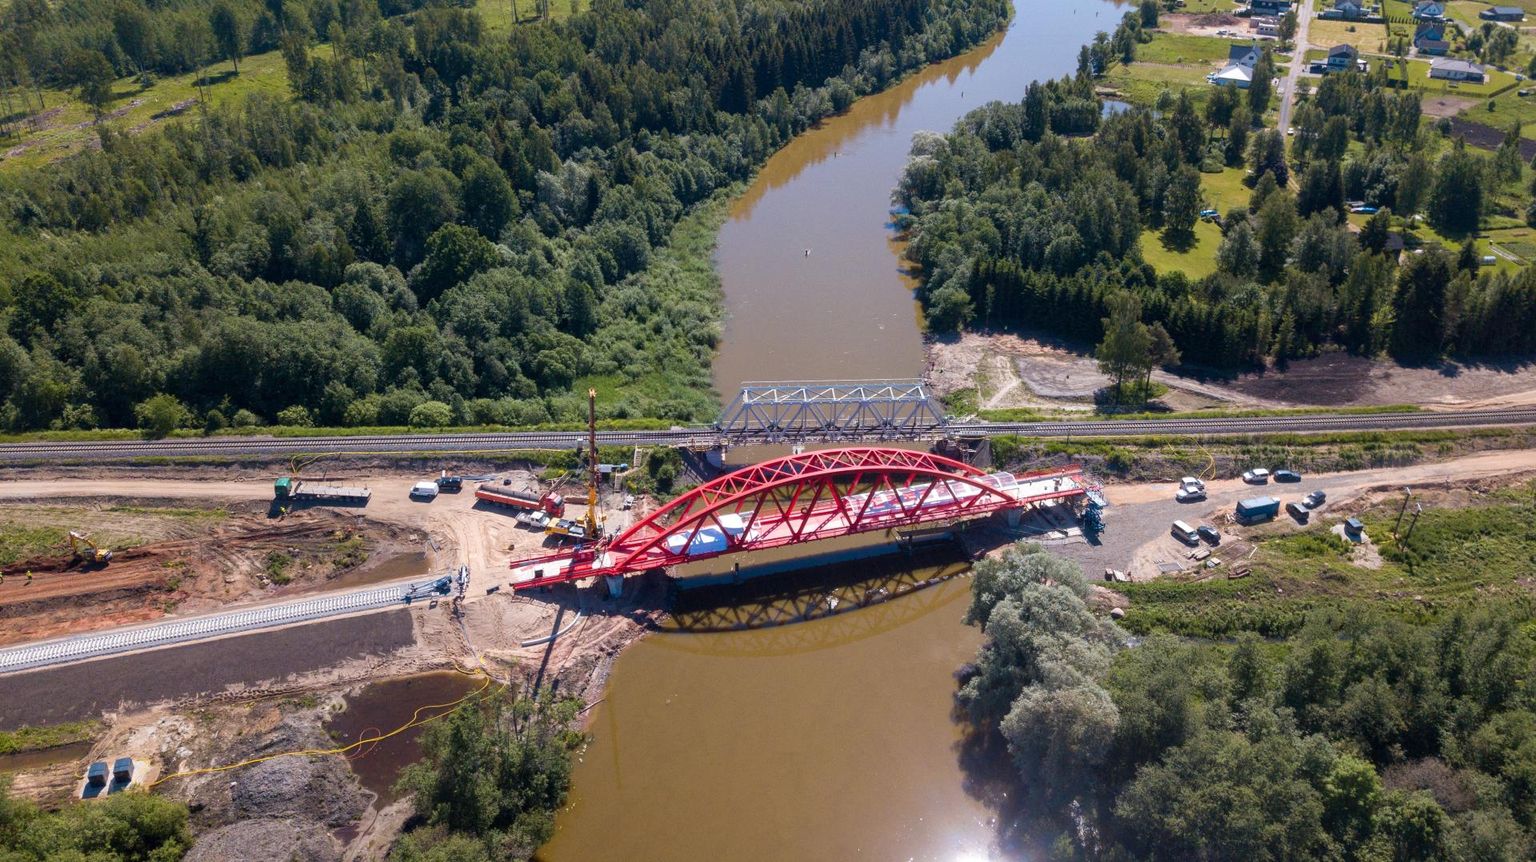 Et hoida võimalikult sirget trassi, ei paigaldata uut silda risti üle jõe, vaid kergelt diagonaalis. Uus Emajõe raudteesild on 101,7 meetrit pikk.